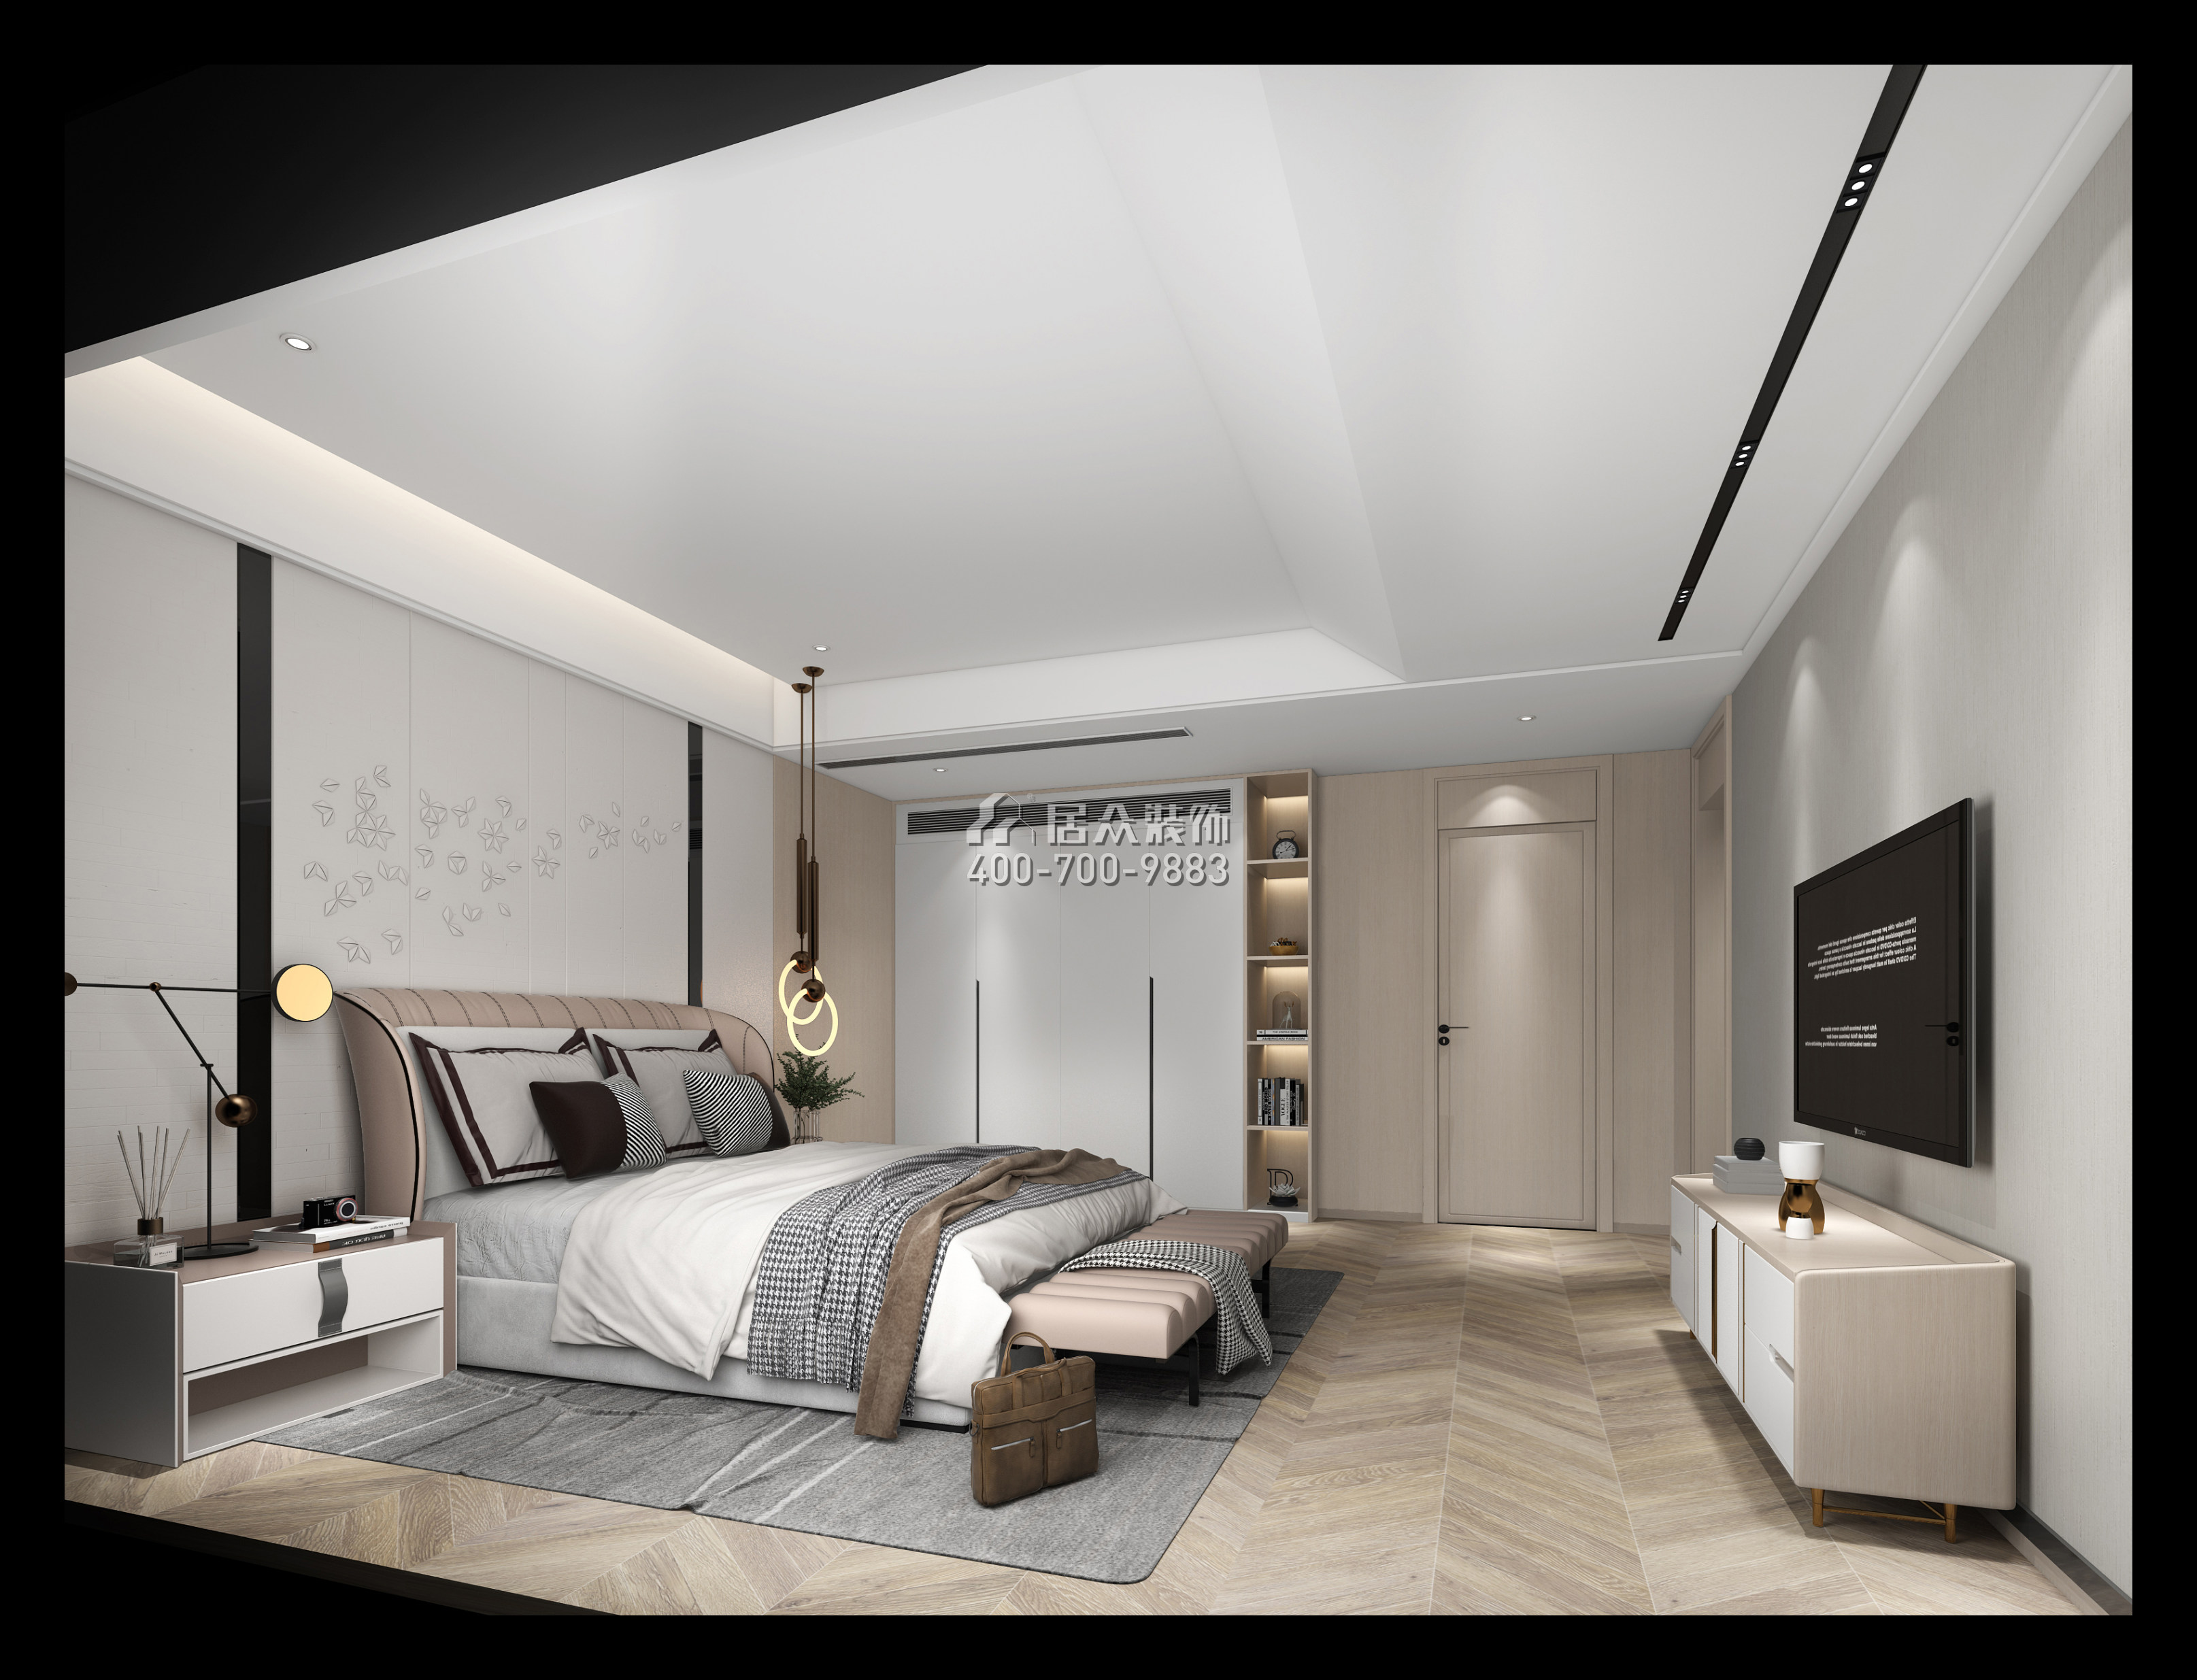 利豐中央公園320平方米現代簡約風格別墅戶型臥室裝修效果圖